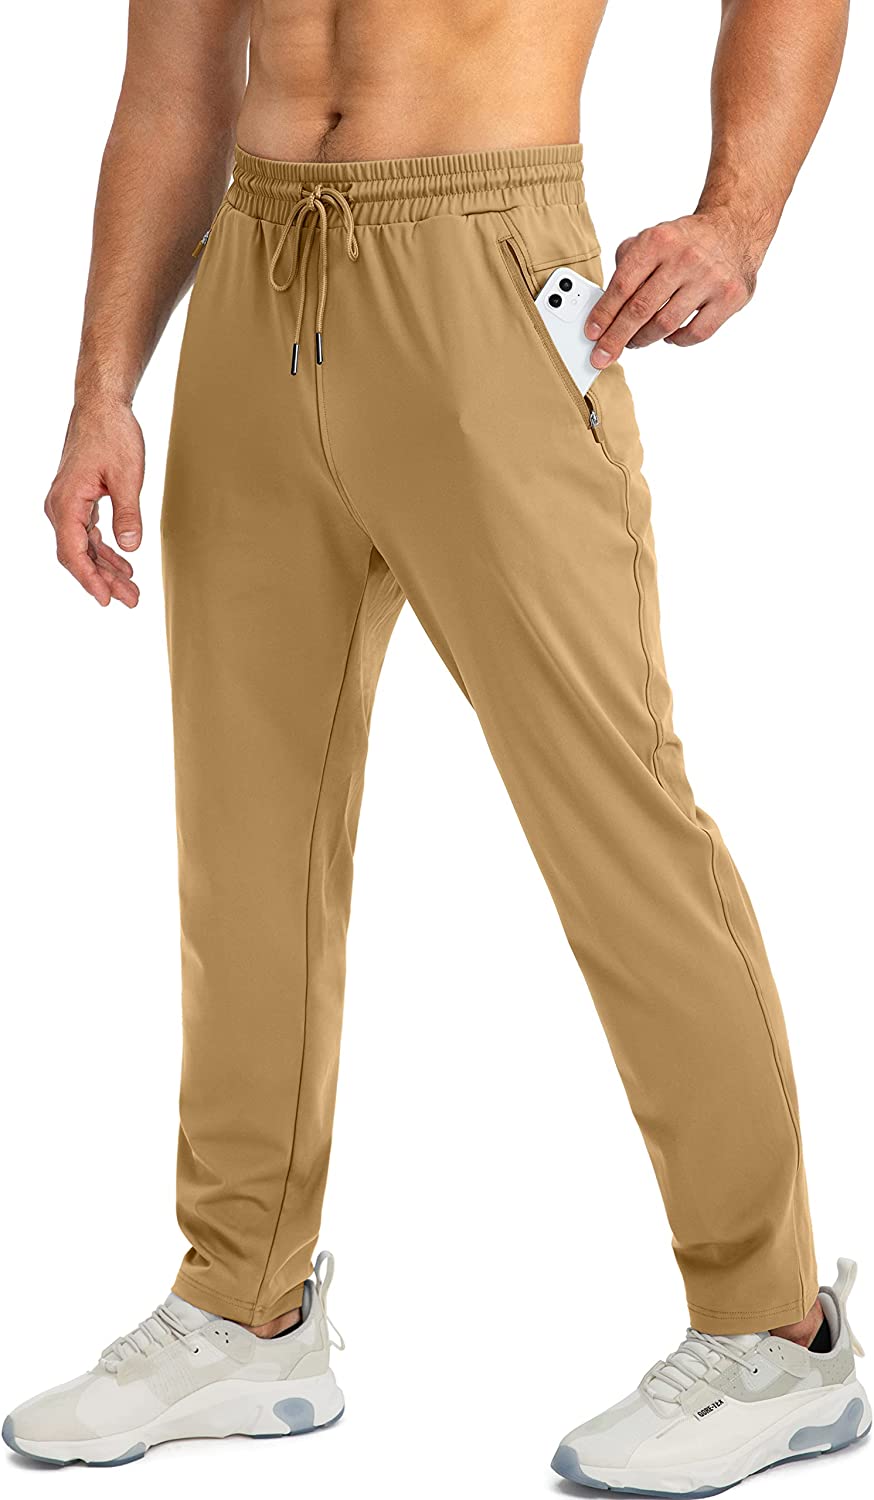 G Gradual Men's Jogger Pants with Zipper Pockets Slim Joggers for Men  Athletic S